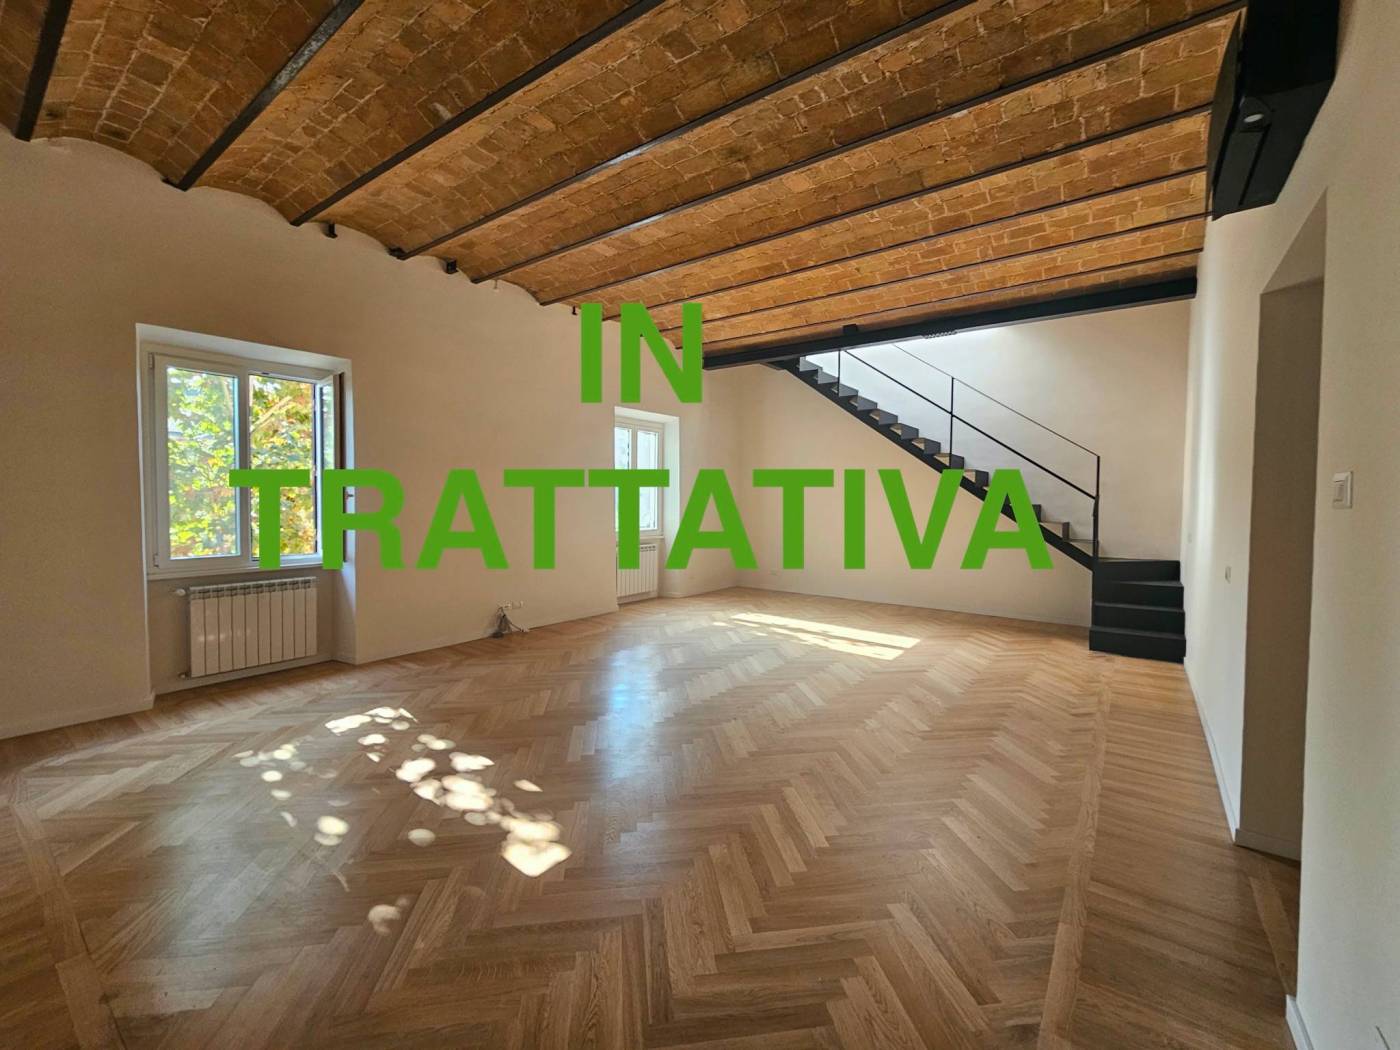 Trieste Nomentana angolo via Novara in palazzo d'epoca, recentemente ripulito, proponiamo la vendita di un attico con splendida terrazza panoramica 